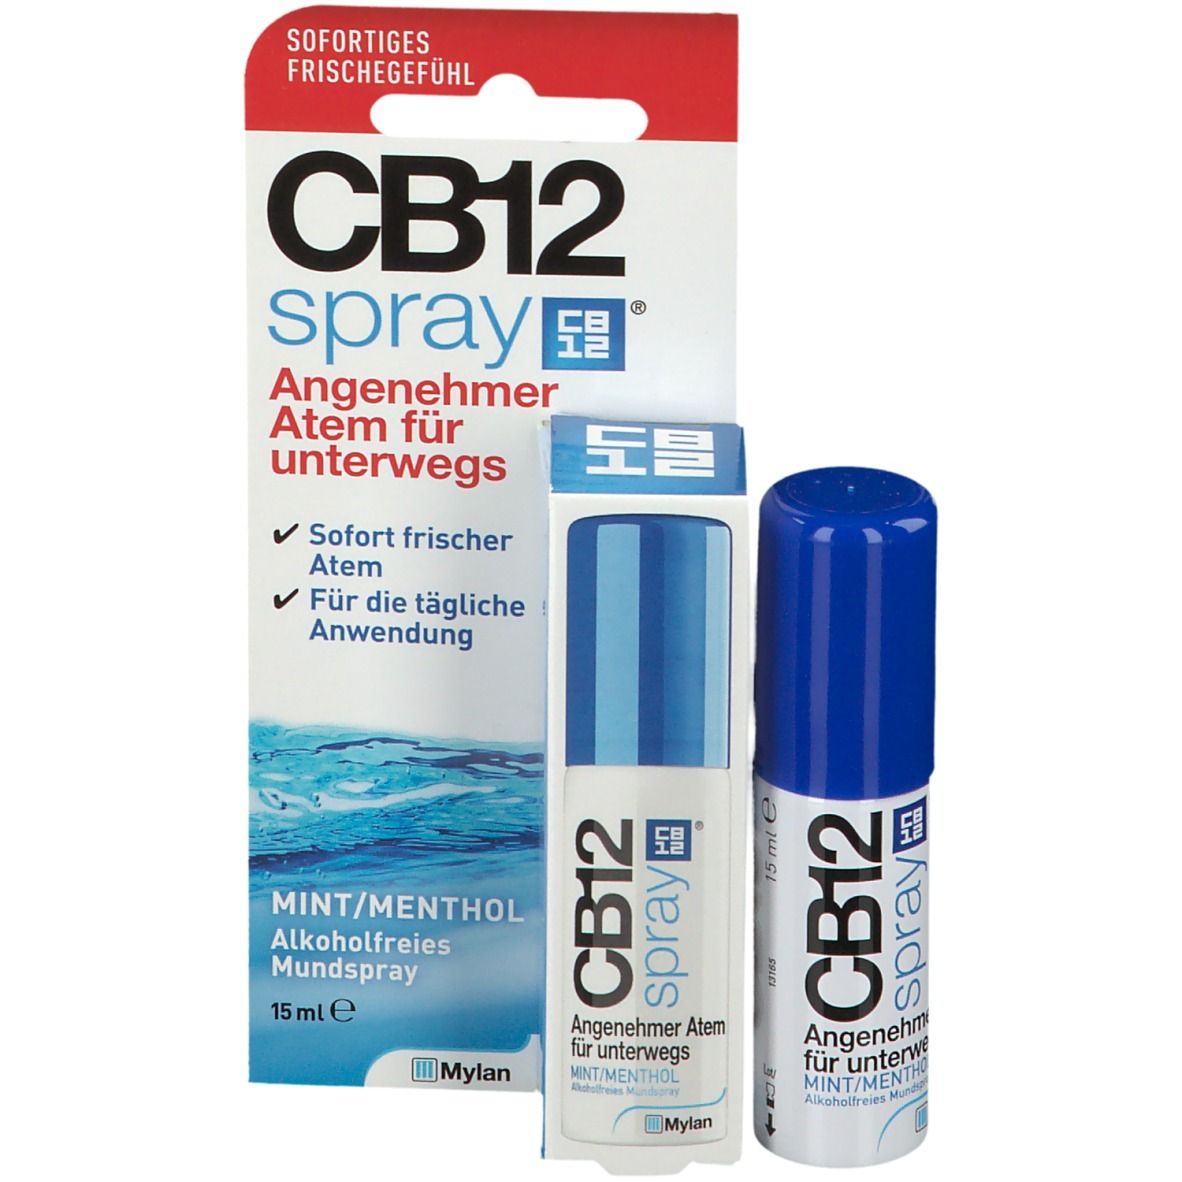 CB12 Spray: Mundspray für angenehmen Atem unterwegs